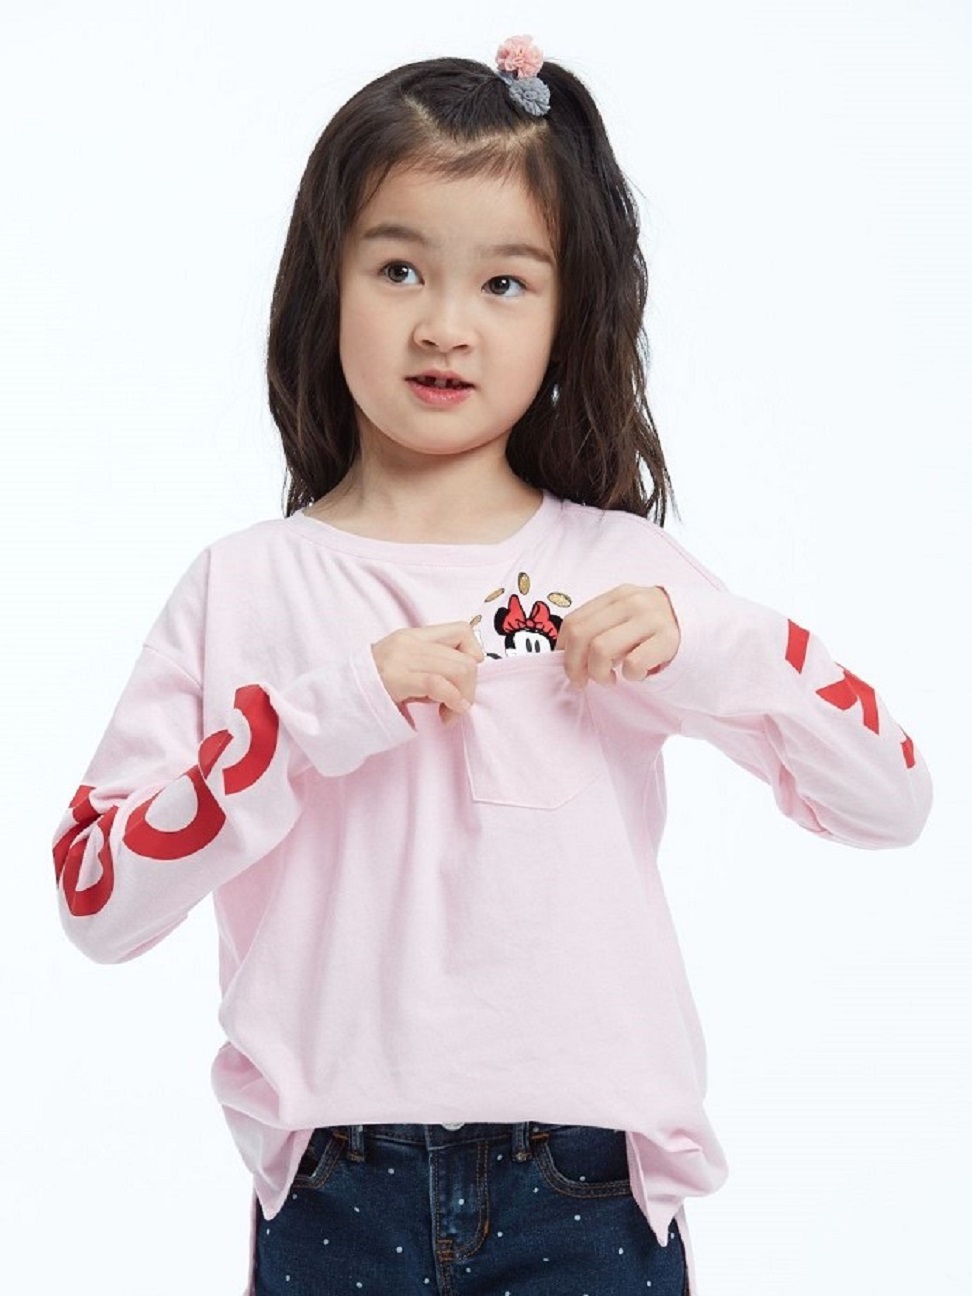 女童裝|Gap x Disney迪士尼聯名 米妮圓領T恤-混色粉